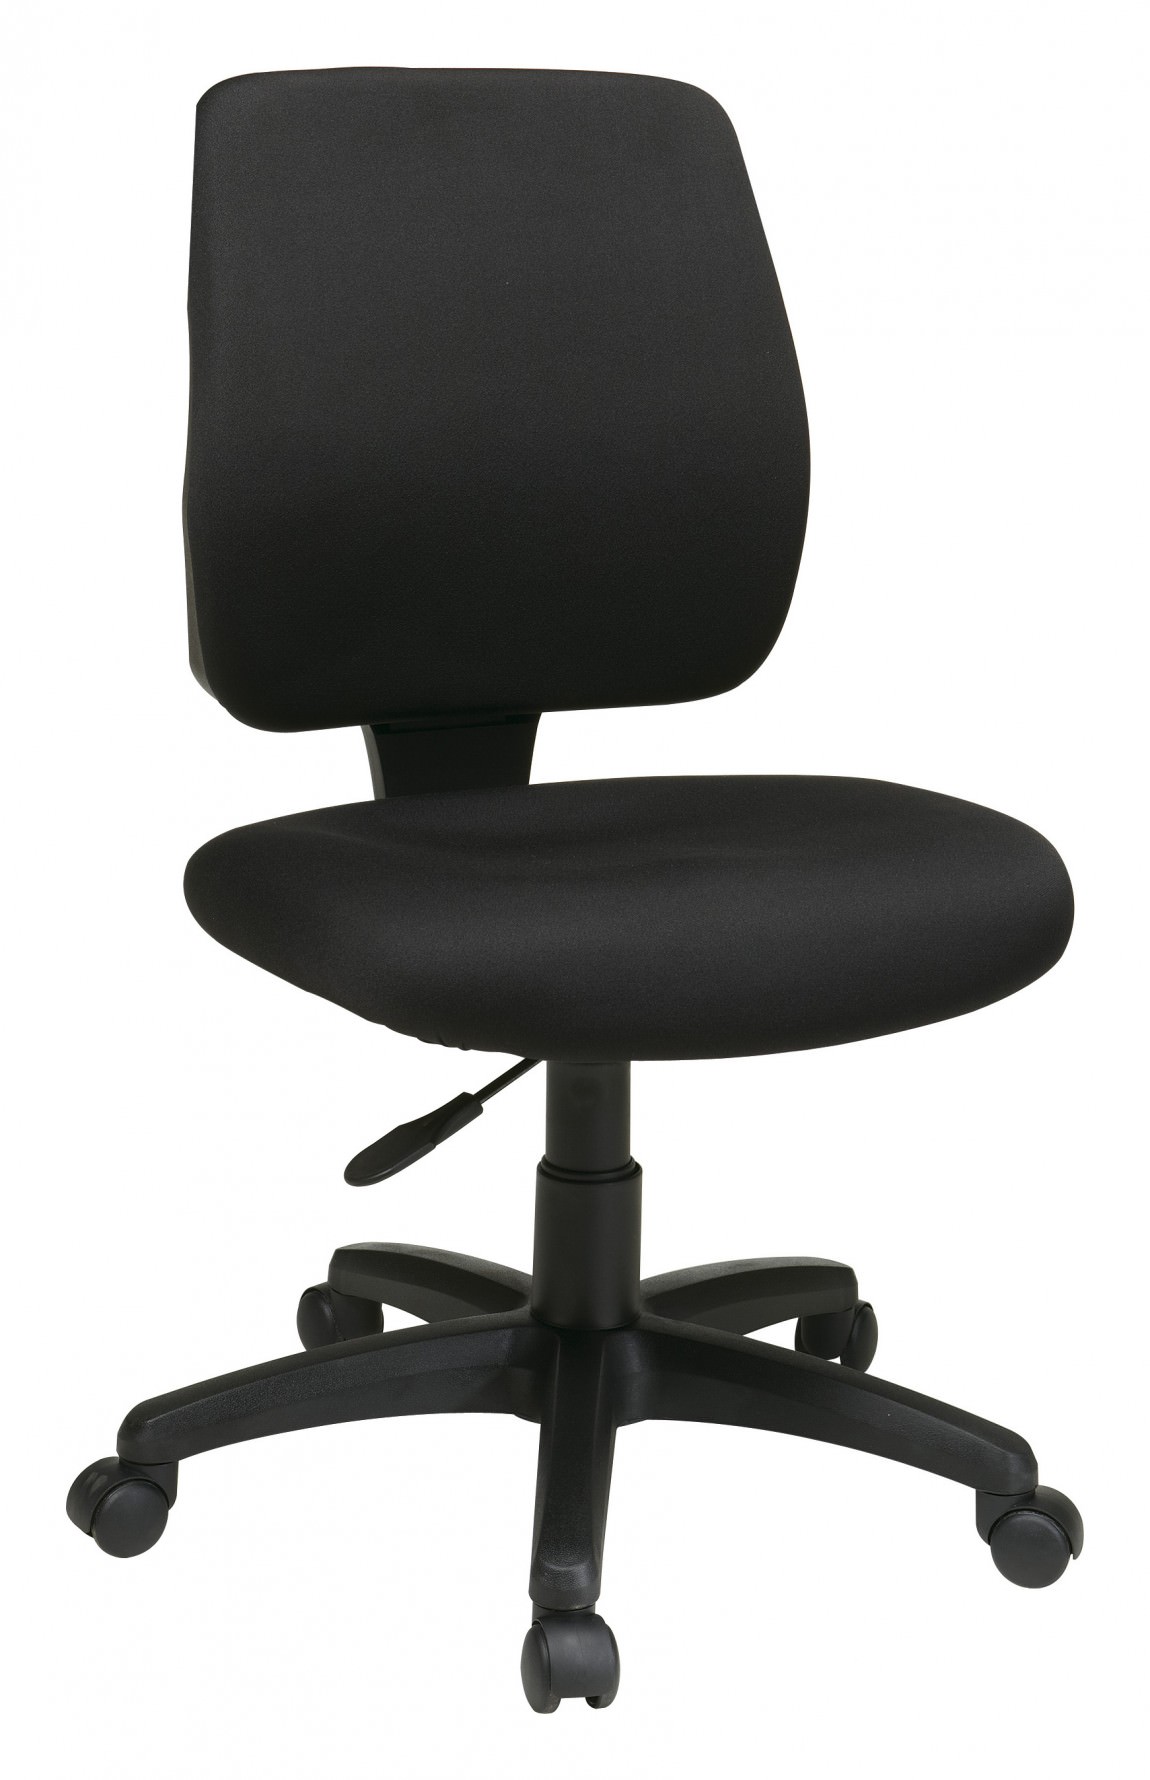 Studio 55D Modern Home Office Chair Swivel Tilt Low Back White Black Chrome  Adjustable for Work Desk Home Office Computer